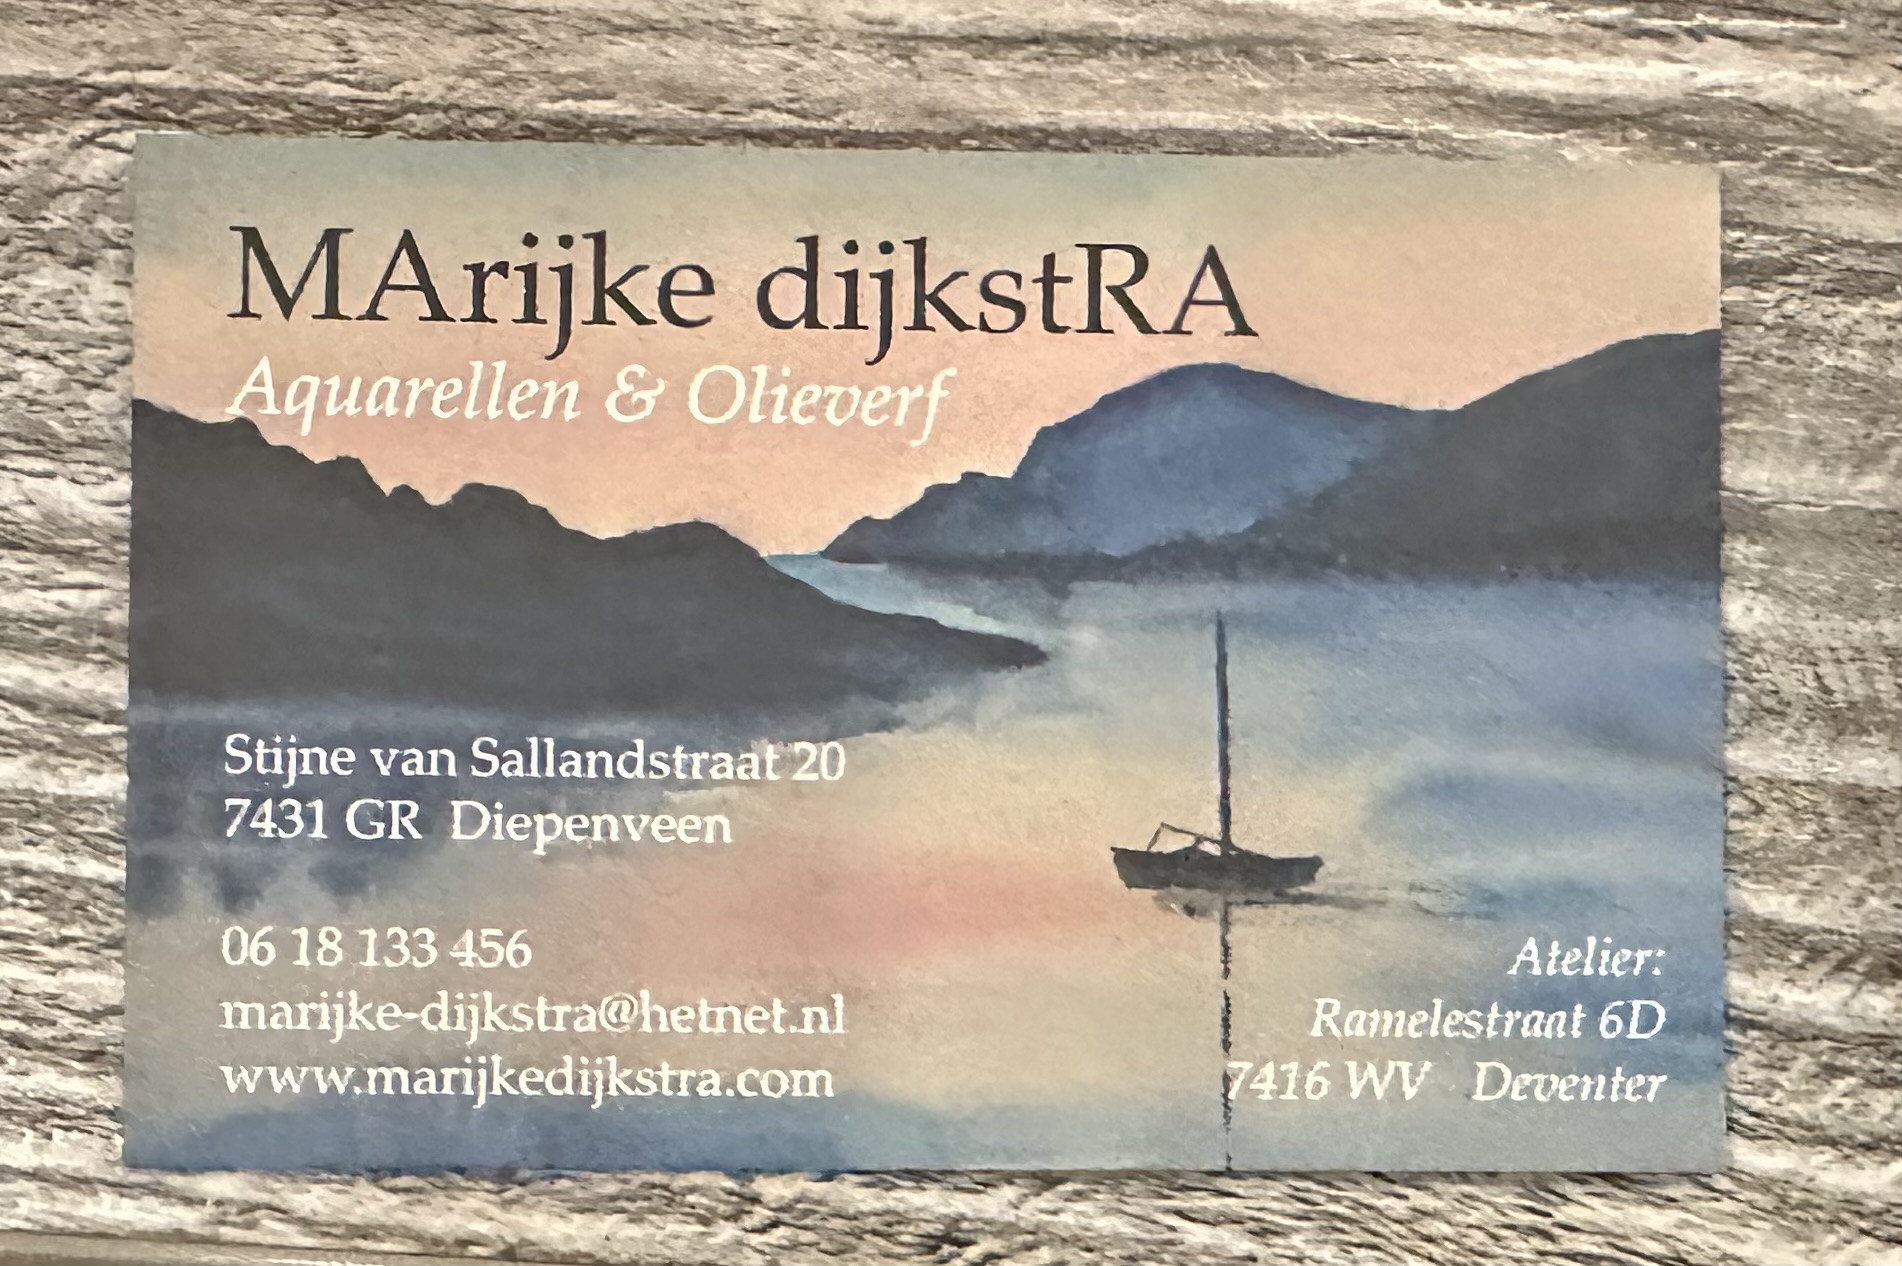 2024 april – Afdelingsavond met Marijke Dijkstra. Zij vertelt over Etty Hillesum. Na de pauze toont Marijke haar schilderwerk waarin ze geïnspireerd werd door de levensmoed en solidariteit van Etty.